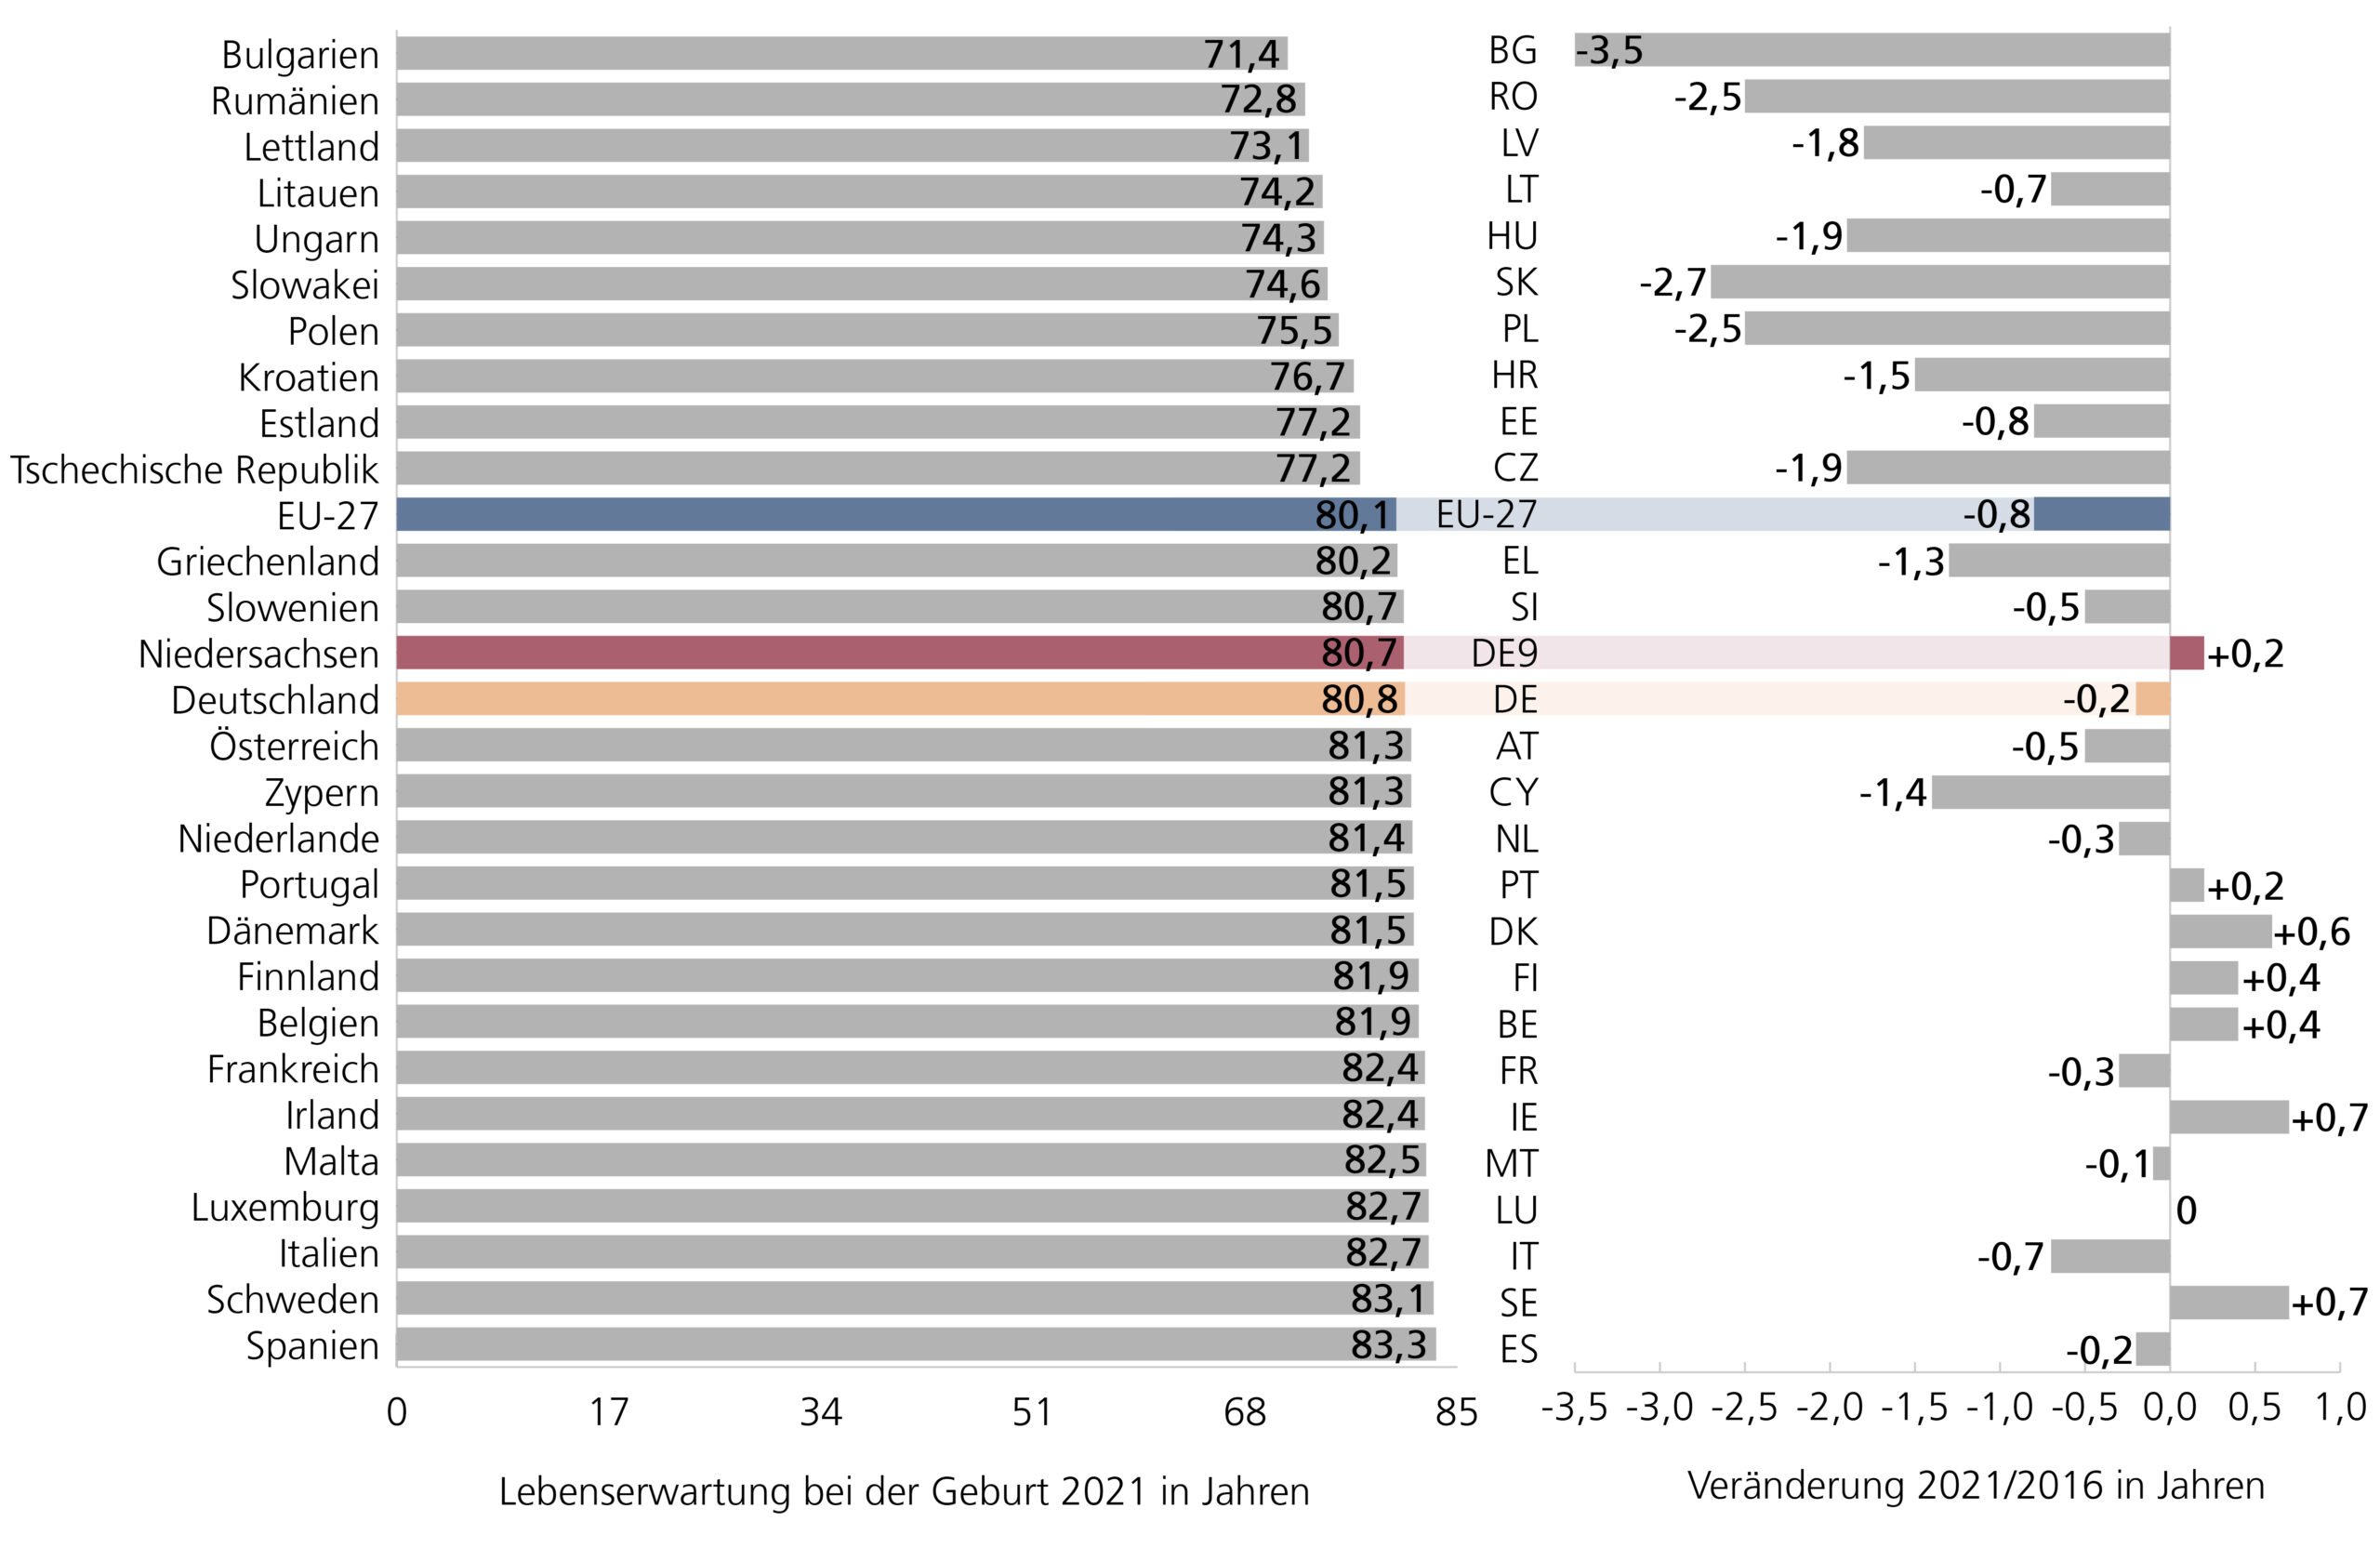 A5: Balken-Diagramm: Lebenserwartung bei der Geburt 2021 sowie Veränderung 2021 gegenüber 2016 im EU-Vergleich in Jahren; Werte der EU-Staaten sowie Niedersachsen und EU27-Durchschnitt sortiert nach Höhe der Lebenserwartung (Werte aus Tabelle 3).'Aussage: Die Lebenserwartung bei der Geburt stieg 2021 gegenüber 2016 in Niedersachsen leicht 0,2 Jahre auf 80,7 Jahre. Anstiege gab es nur in 6 westeuropäischen Staaten. Im EU-Durchschnitt ging die Lebenserwartung um 0,8 Jahre auf 80,1 Jahre zurück. Die höchsten Rückgänge um mehr als 1,5 Jahre gab es in 7 osteuropäischen Staaten mit ohnehin unterdurchschnittlicher Lebenserwartung. 